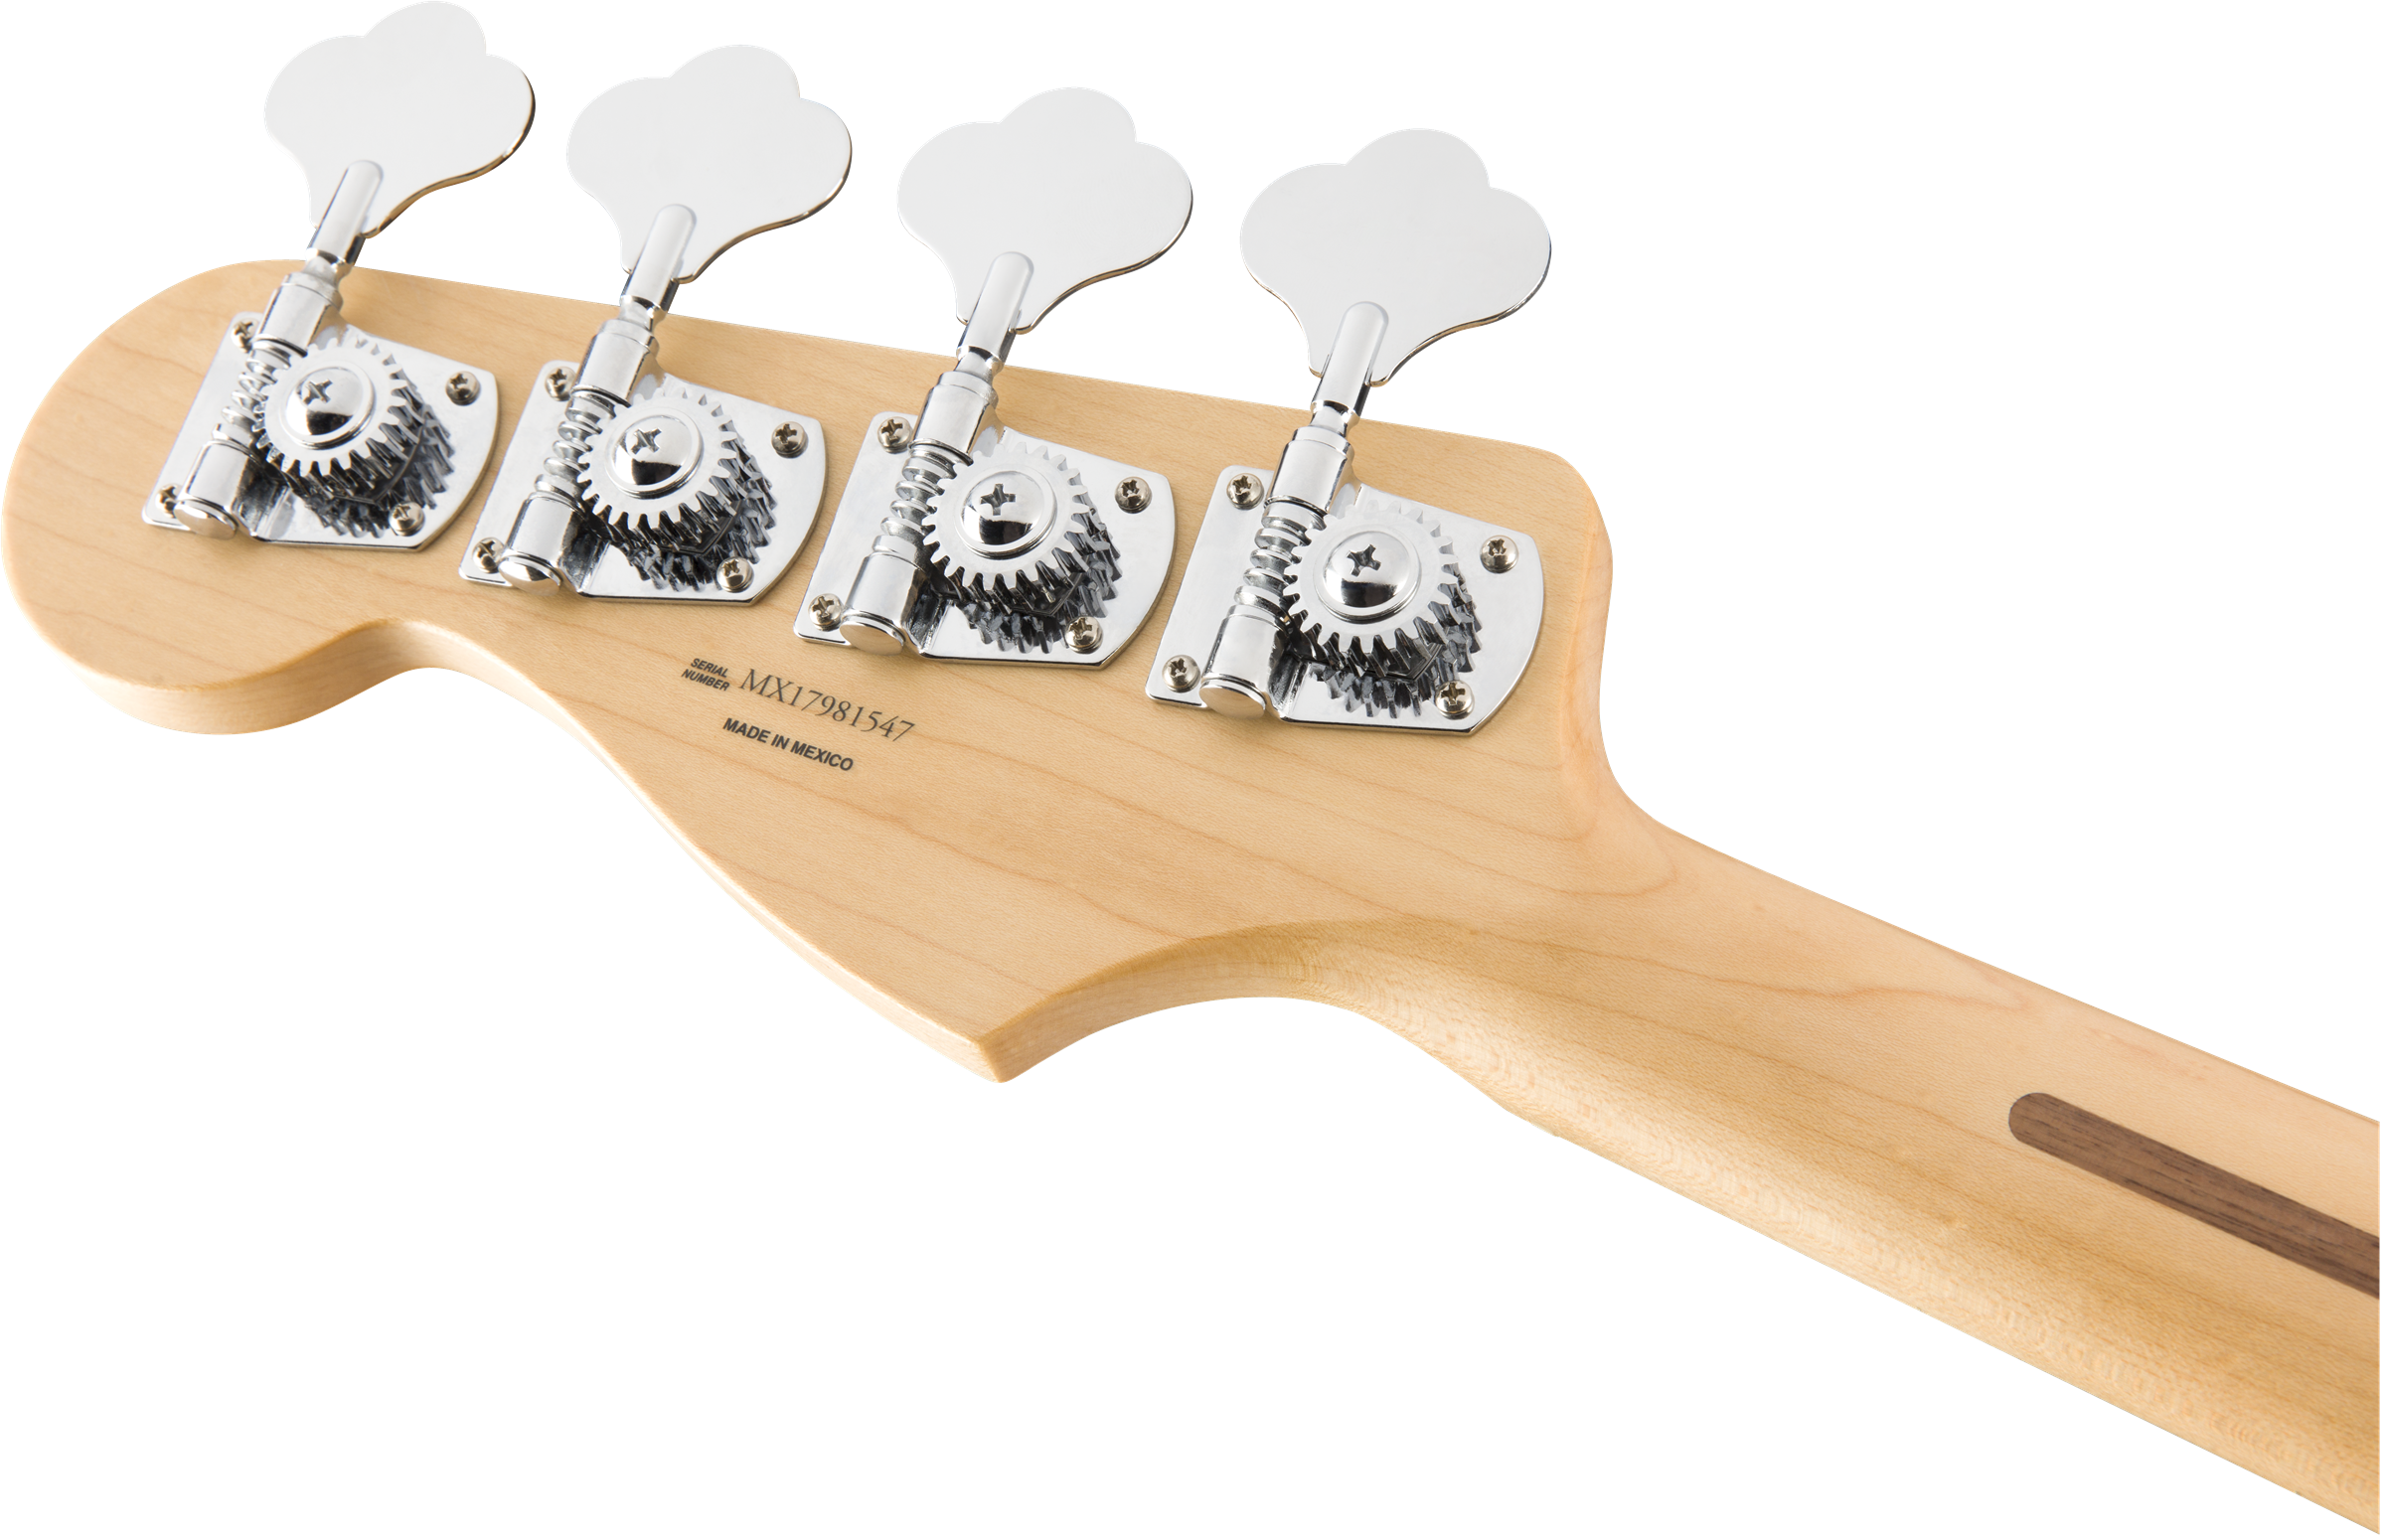 Fender Player Jazz Bass, Maple Fingerboard, Buttercream 0149902534